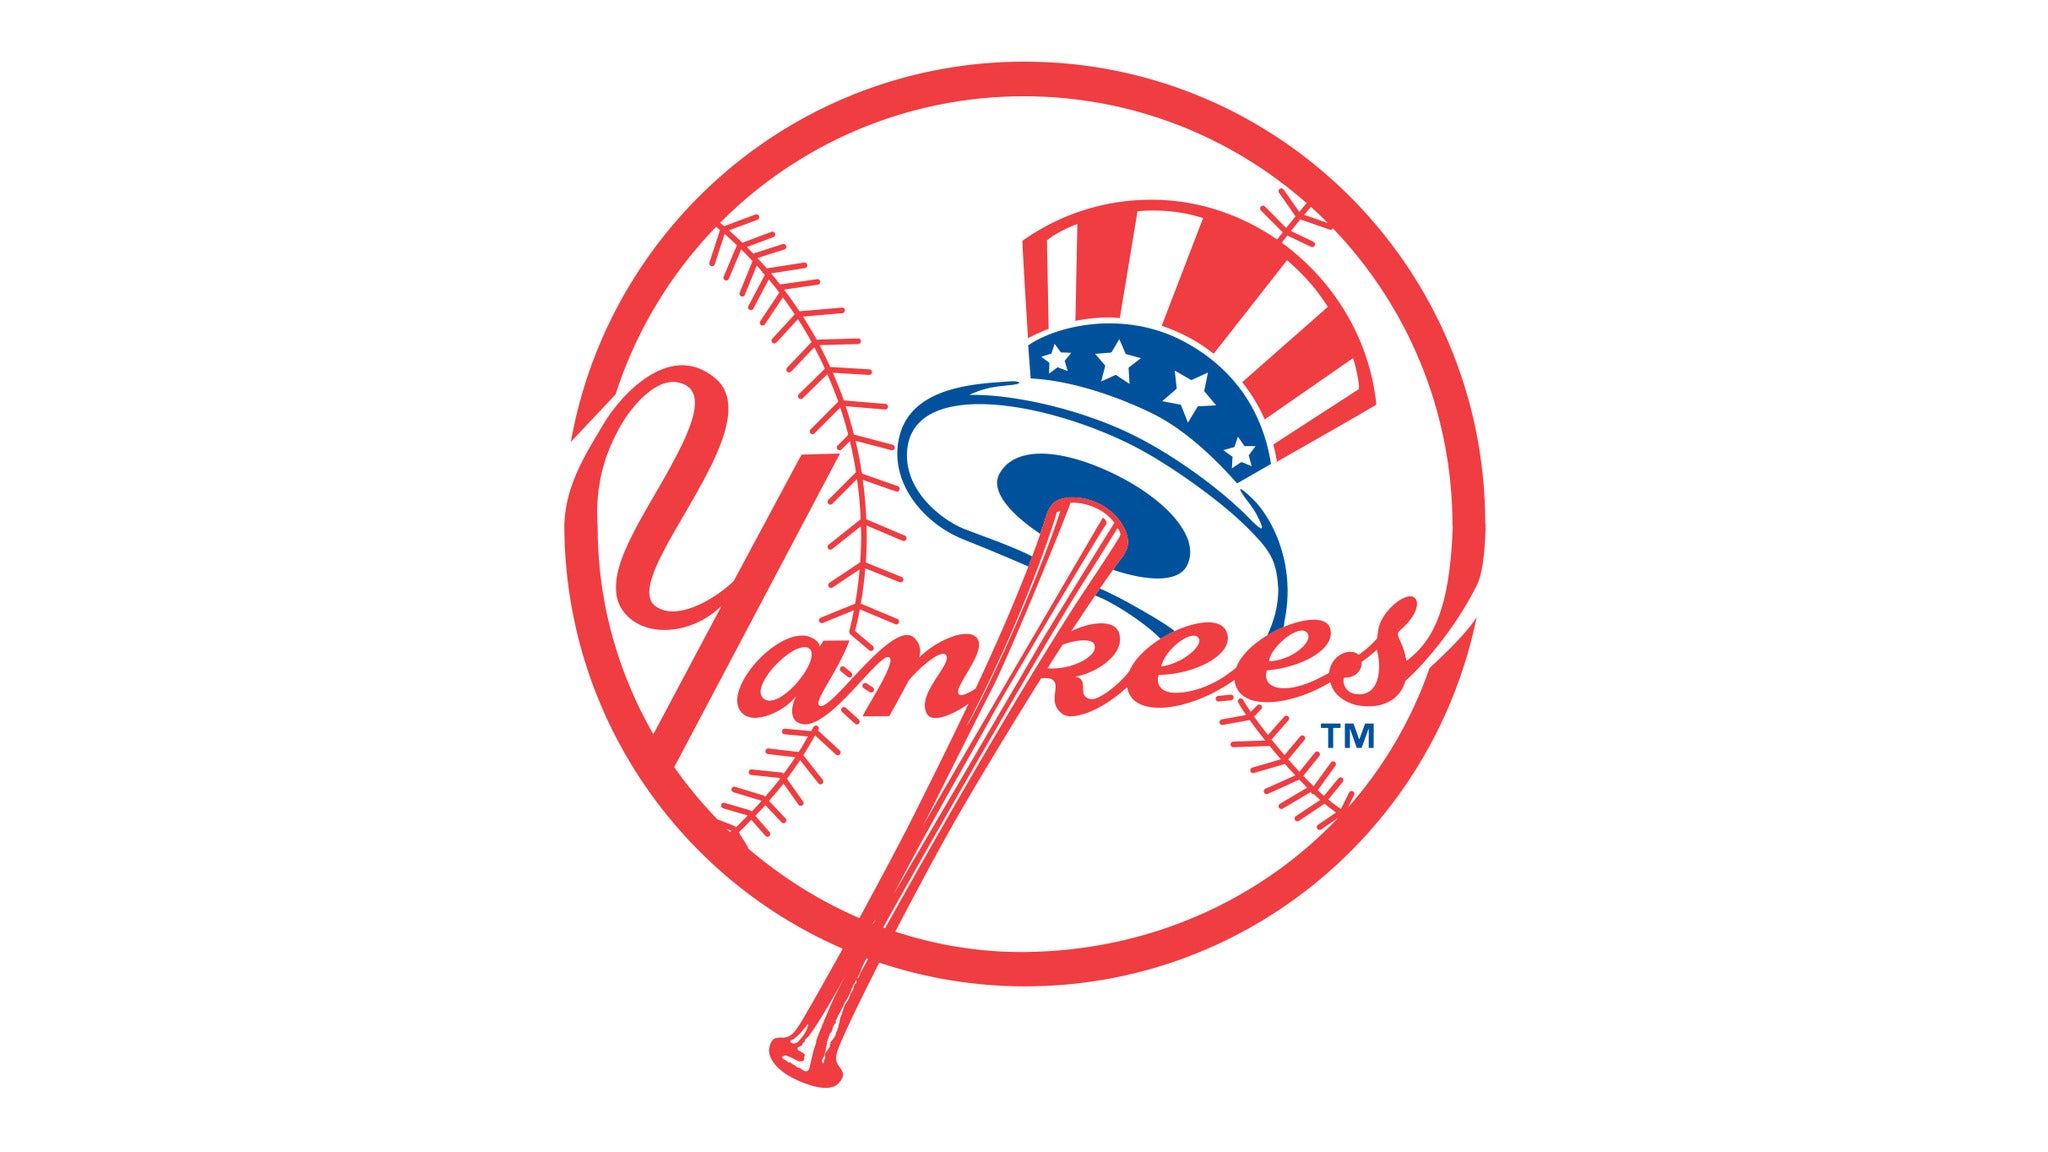 New York Yankees v. Texas Rangers